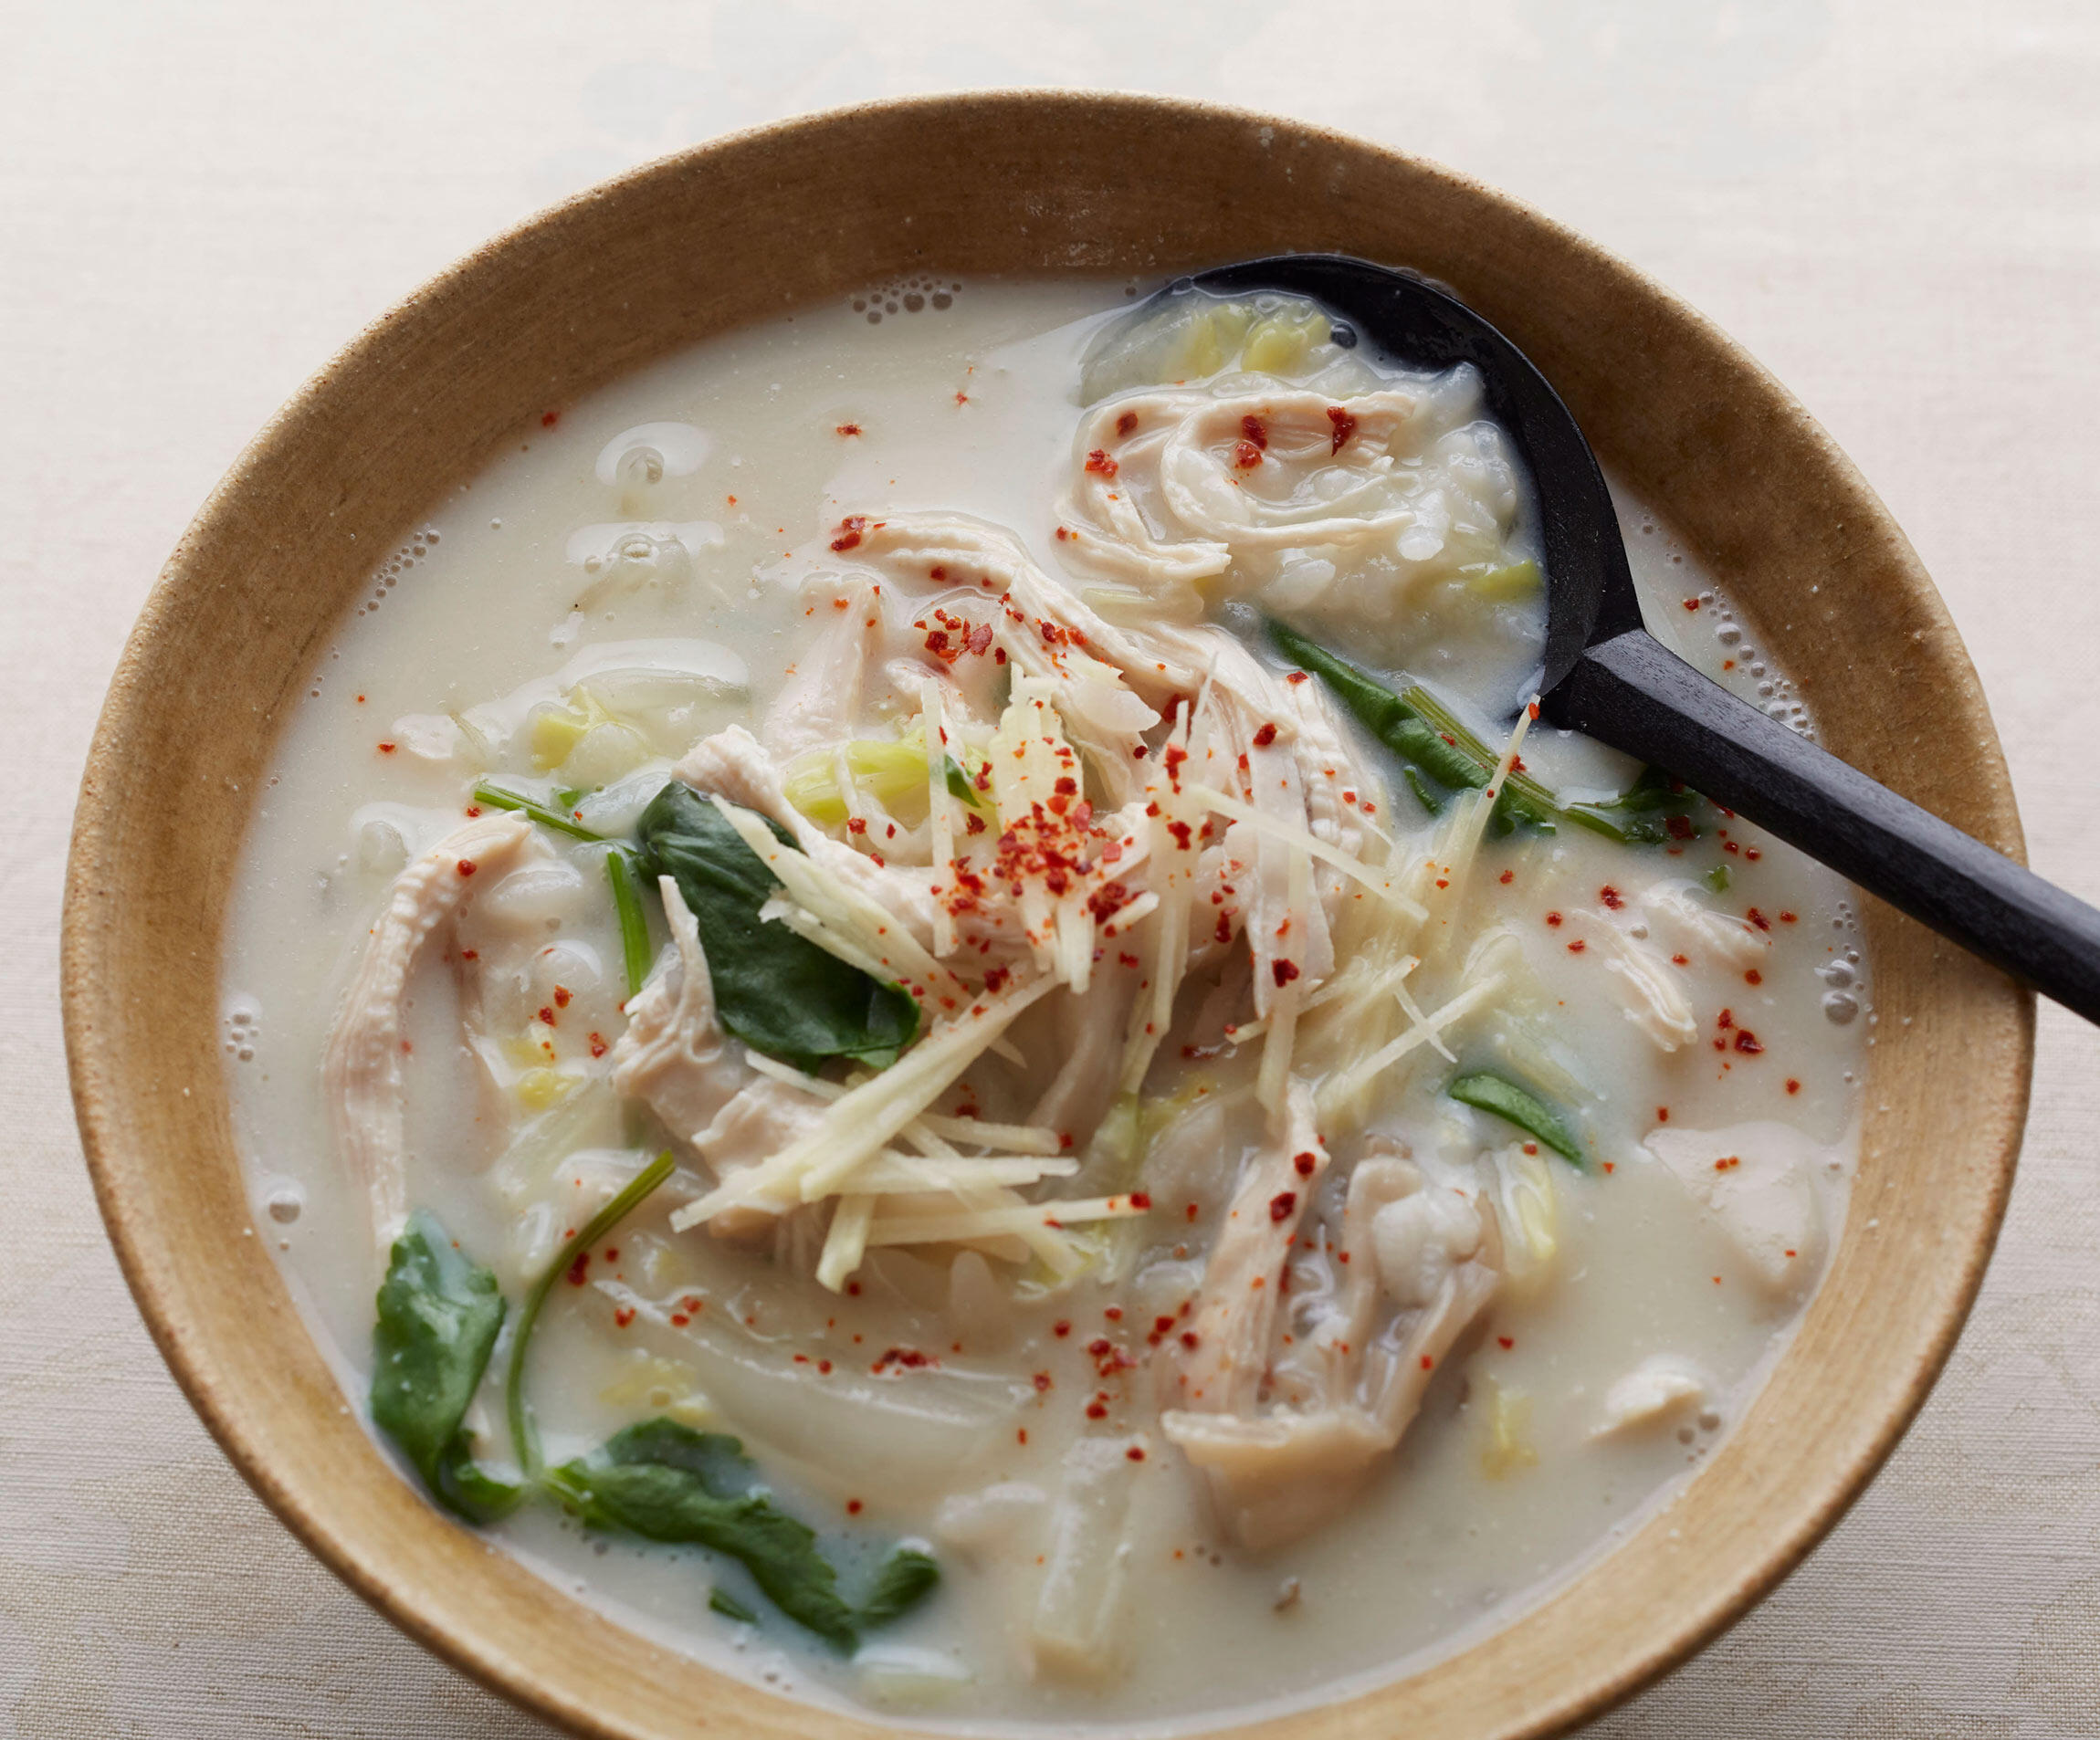 生姜がピリっと効いた 鶏肉と白菜の豆乳雑炊 しっかり食べる満足スープ 今日 なにつくる 公式 Dancyu ダンチュウ